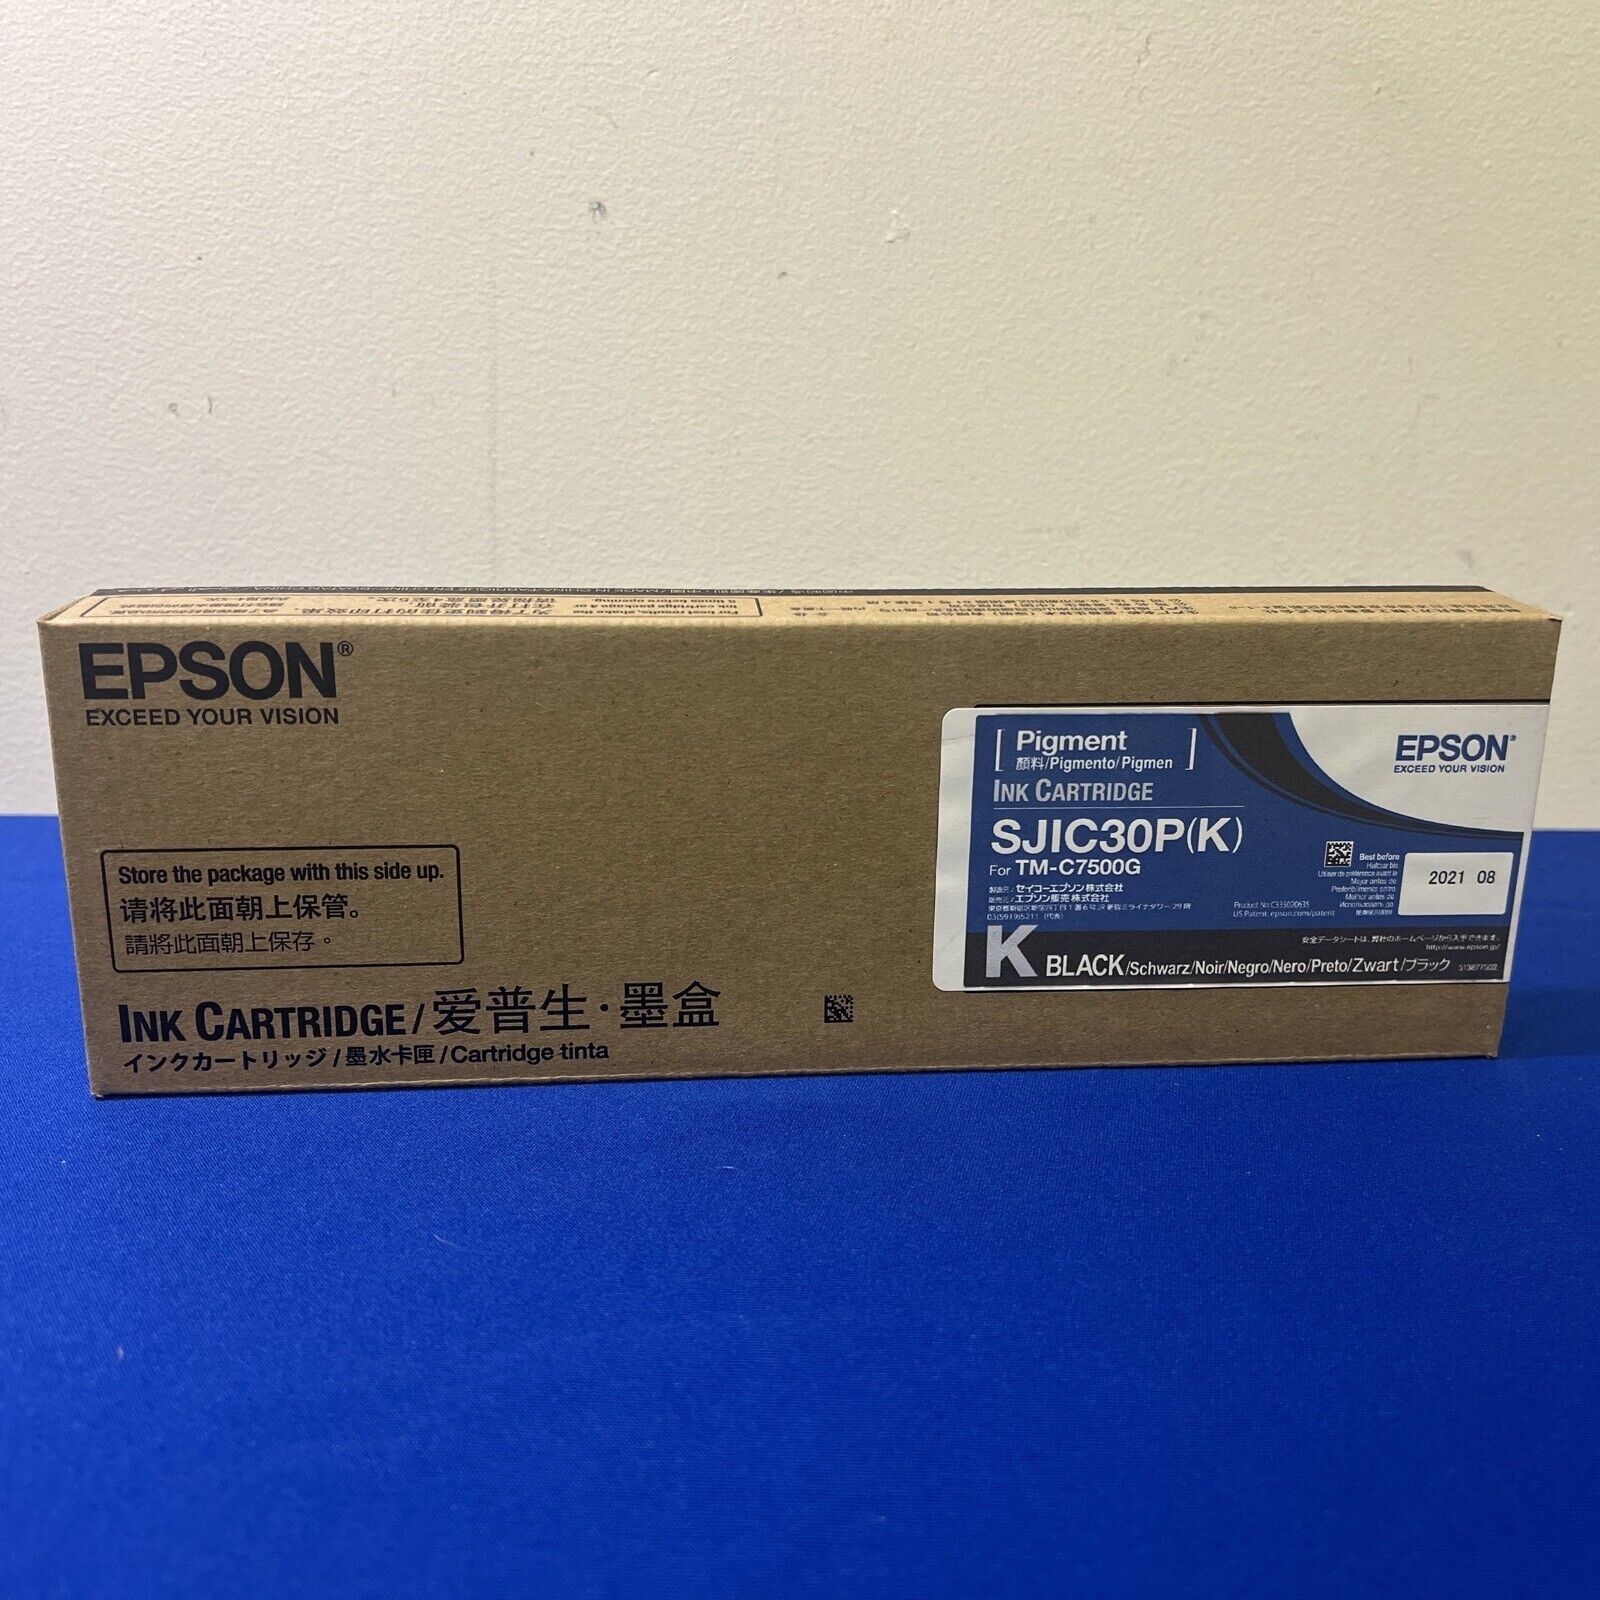 Epson SJIC30P (K) Black Ink Cartridge For Epson TM-C7500G New Unopened